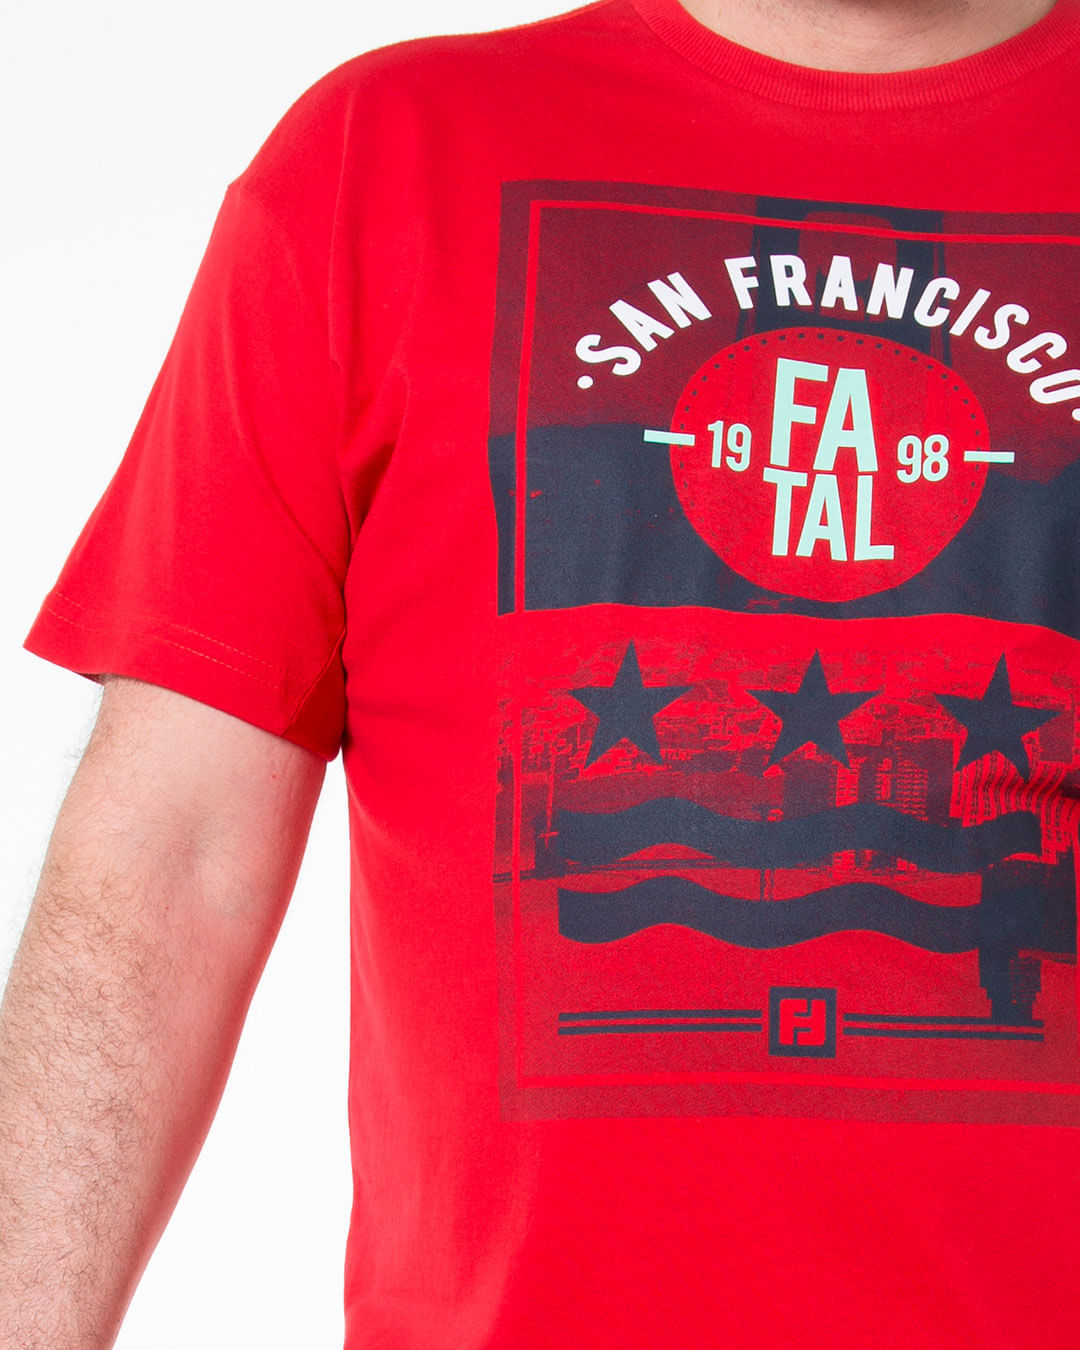 Camiseta-Masculina-Plus-Size-Estampada-San-Francisco-Fatal-Vermelha